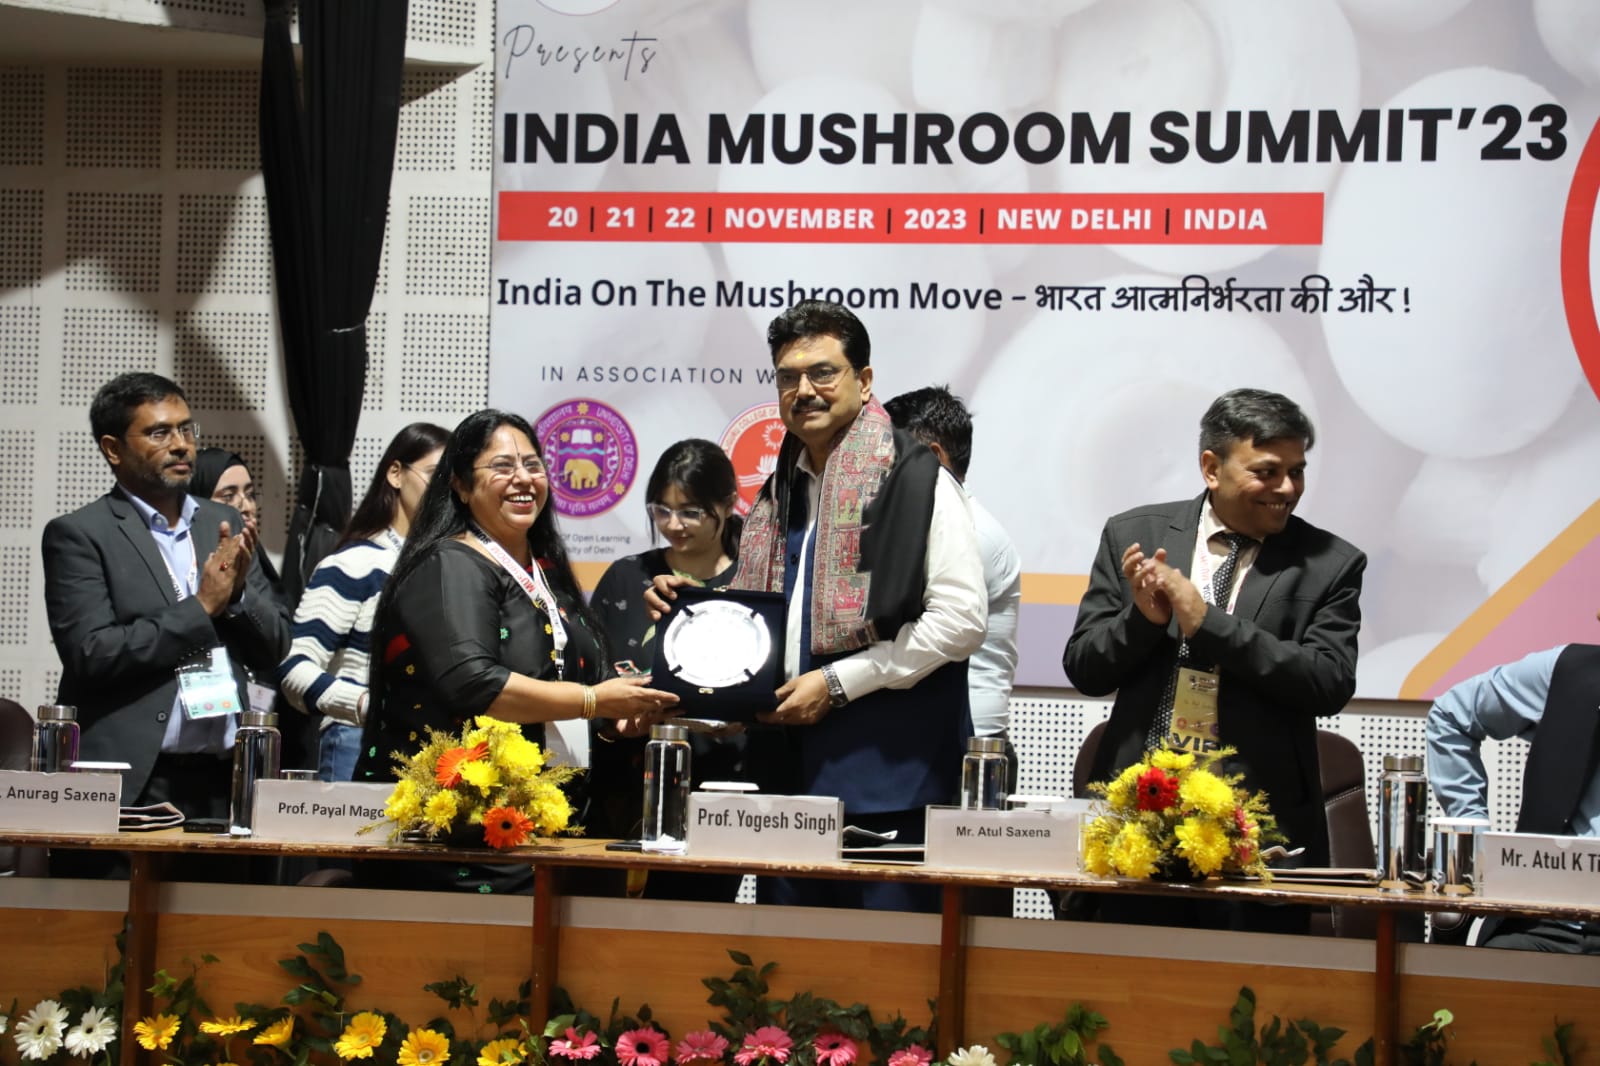 India Mushroom Summit 2023